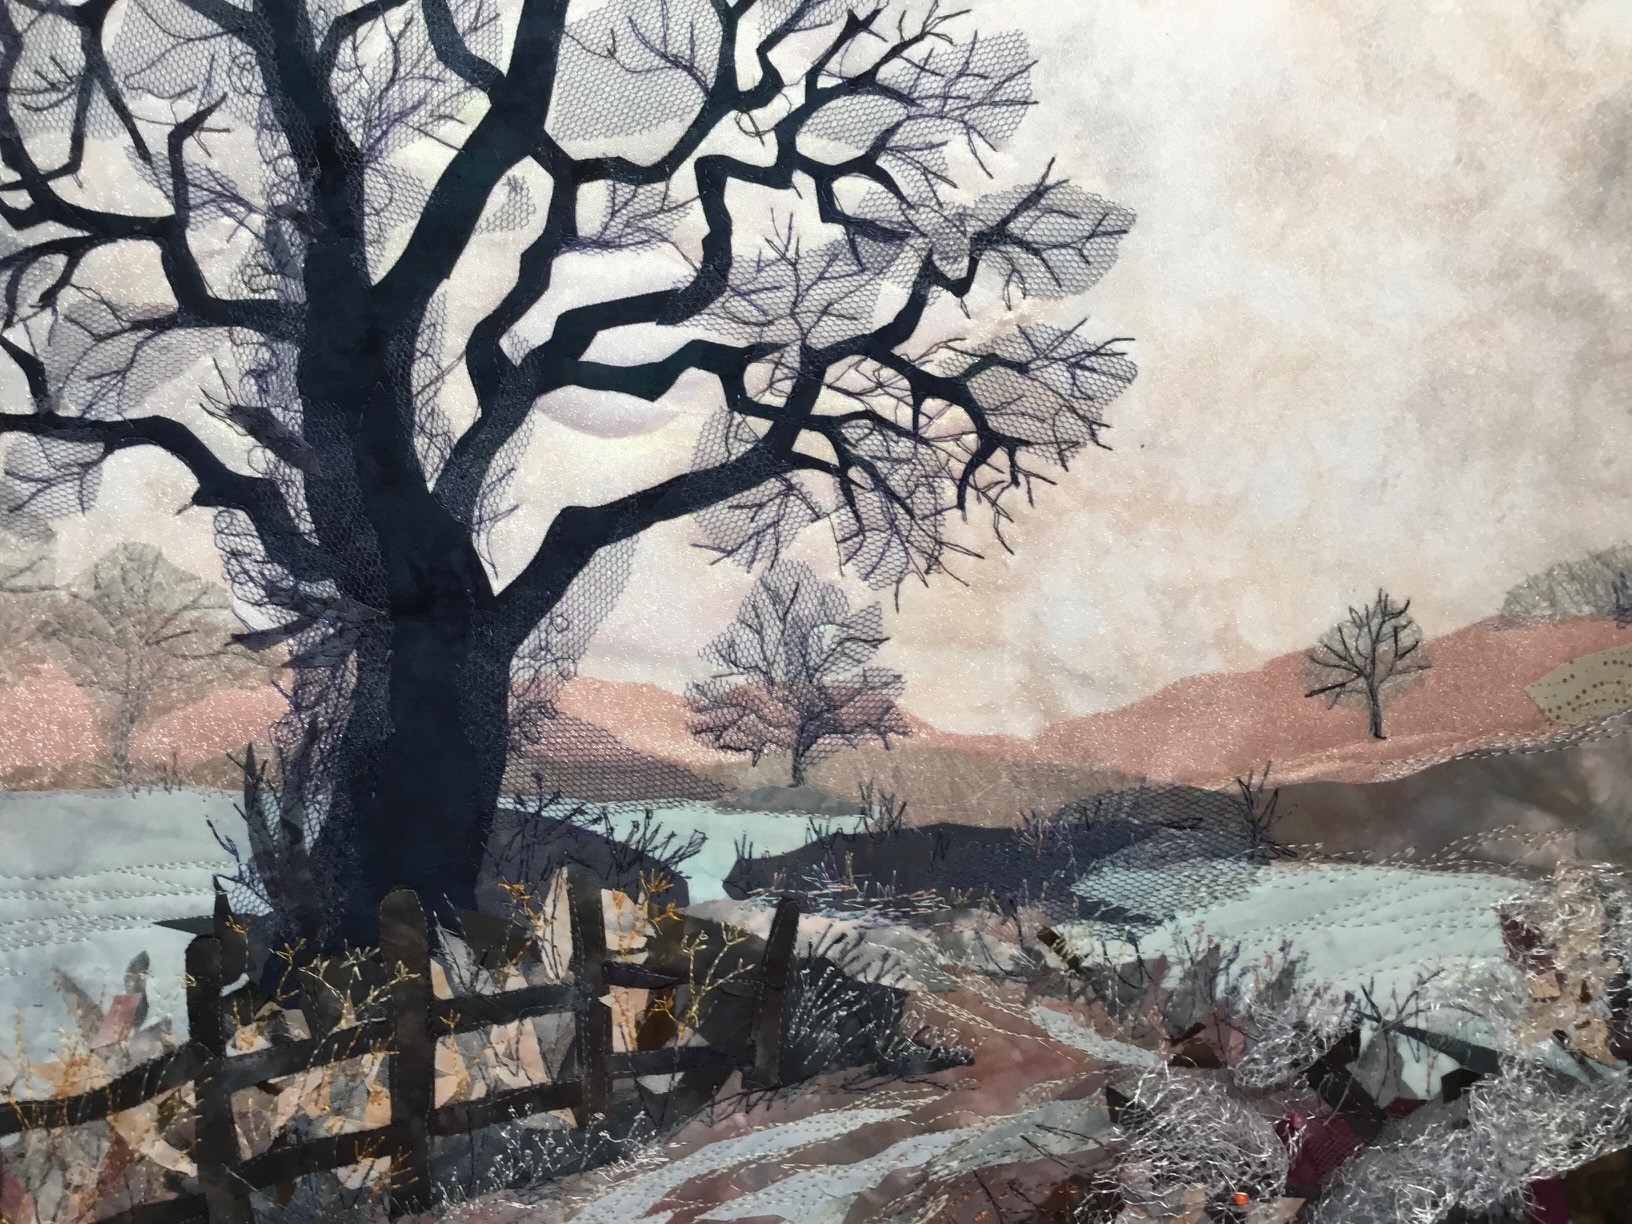 Workshop : Winter scene - Shinfield, Berks